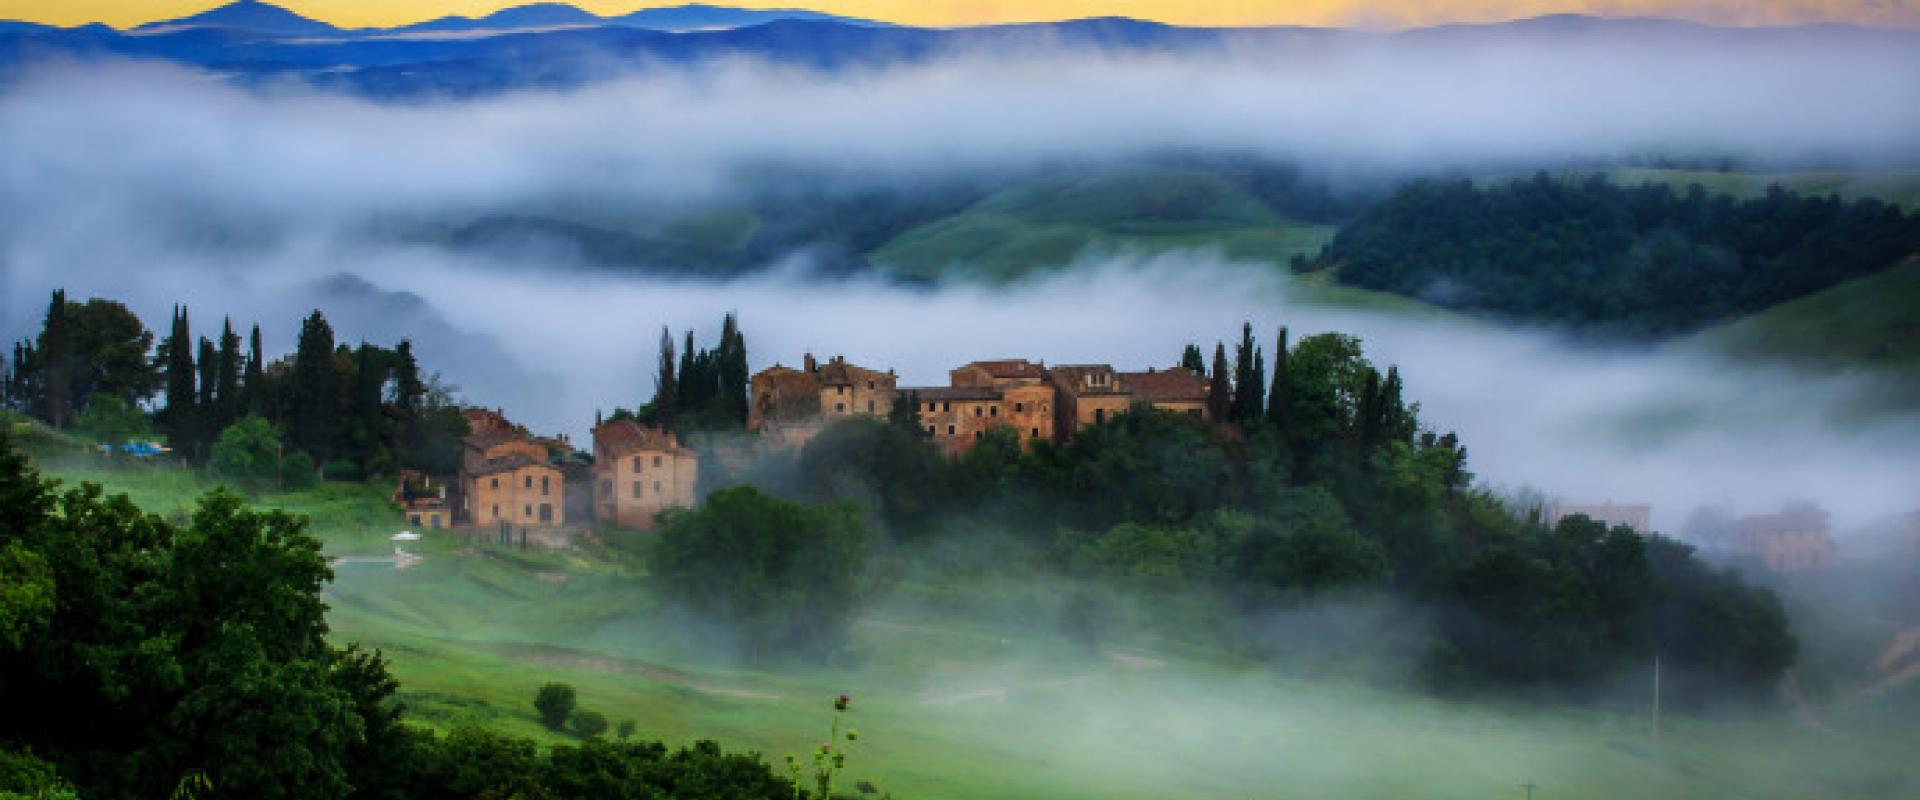 Tour Tuscany Wonders & Jewels of Chianti-shire!